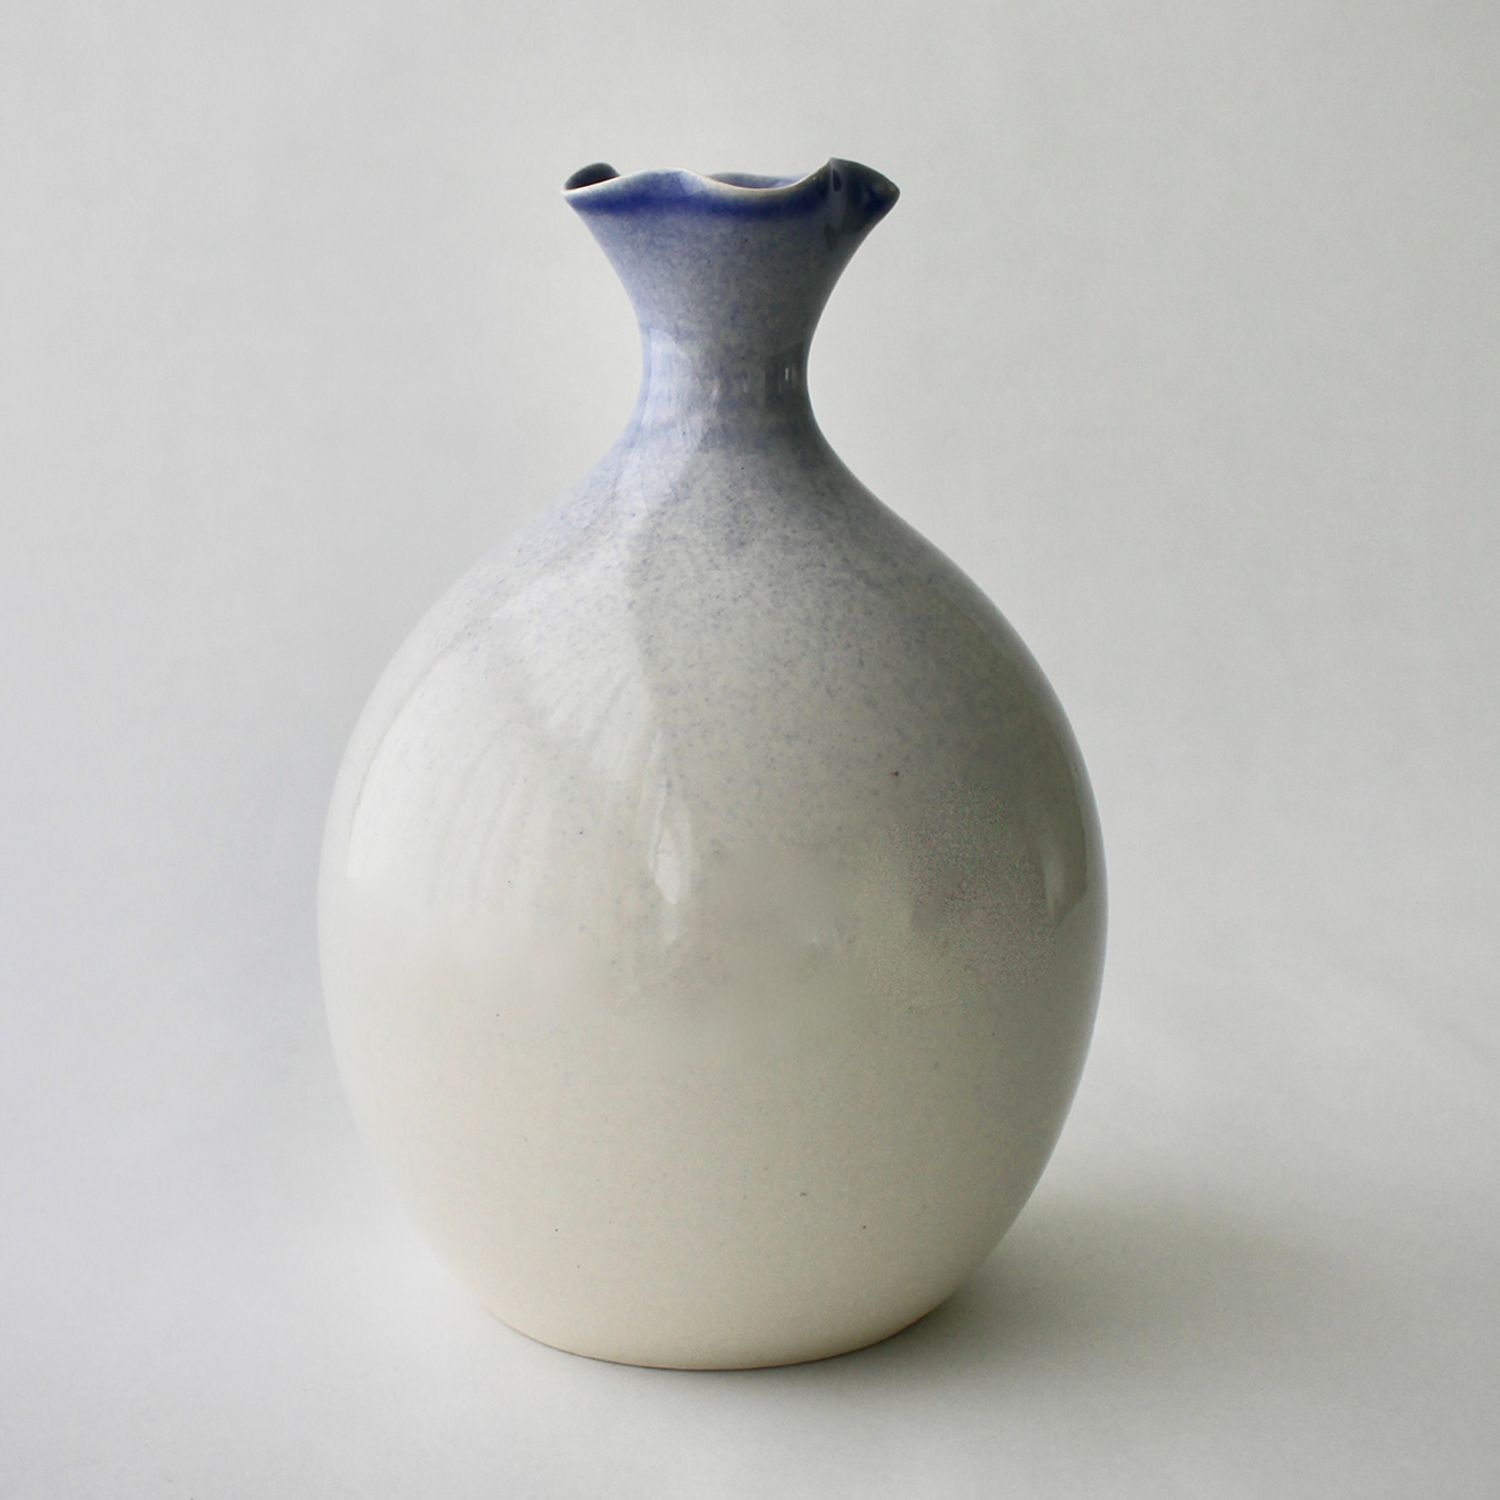 Annika Hoefs: Medium Flared Vase – Icy Blue Product Image 1 of 1